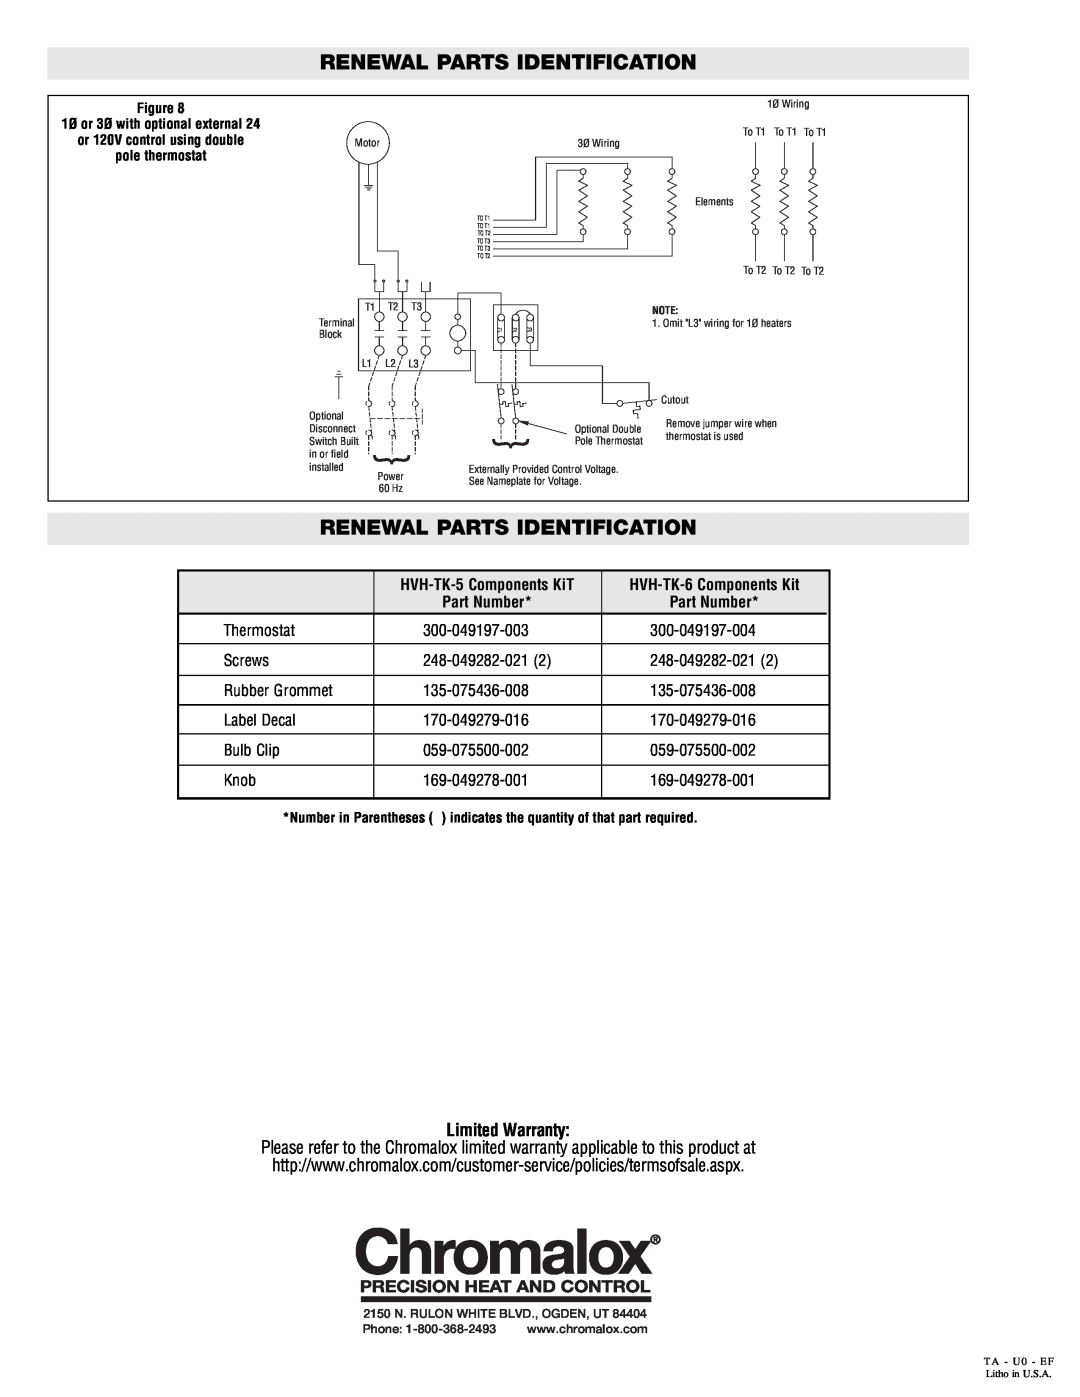 Chromalox HVH-TK6 Renewal Parts Identification, Limited Warranty, HVH-TK-5 Components KiT, HVH-TK-6 Components Kit 